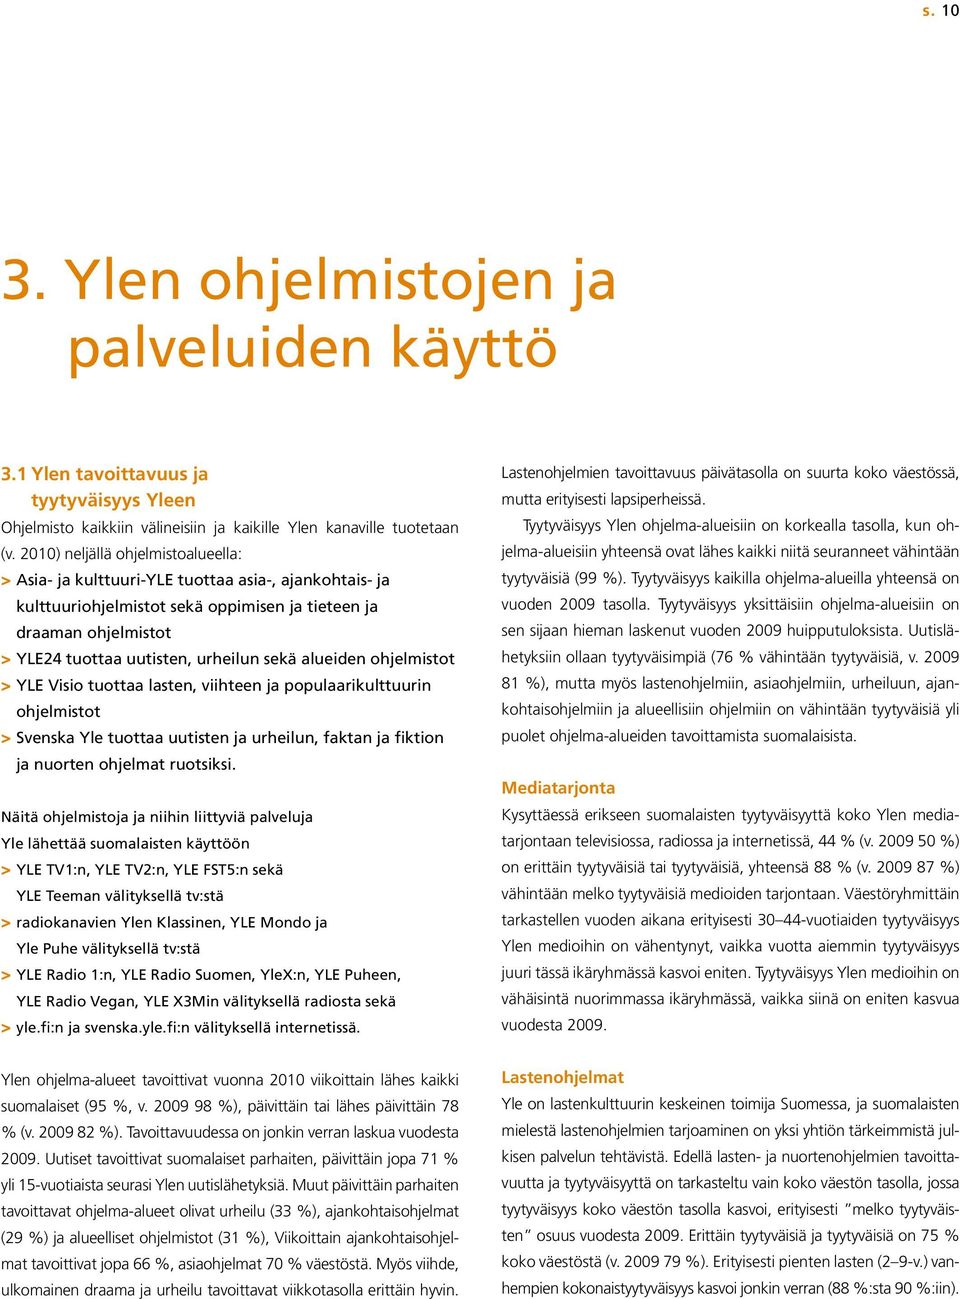 sekä alueiden ohjelmistot > YLE Visio tuottaa lasten, viihteen ja populaarikulttuurin ohjelmistot > Svenska Yle tuottaa uutisten ja urheilun, faktan ja fiktion ja nuorten ohjelmat ruotsiksi.